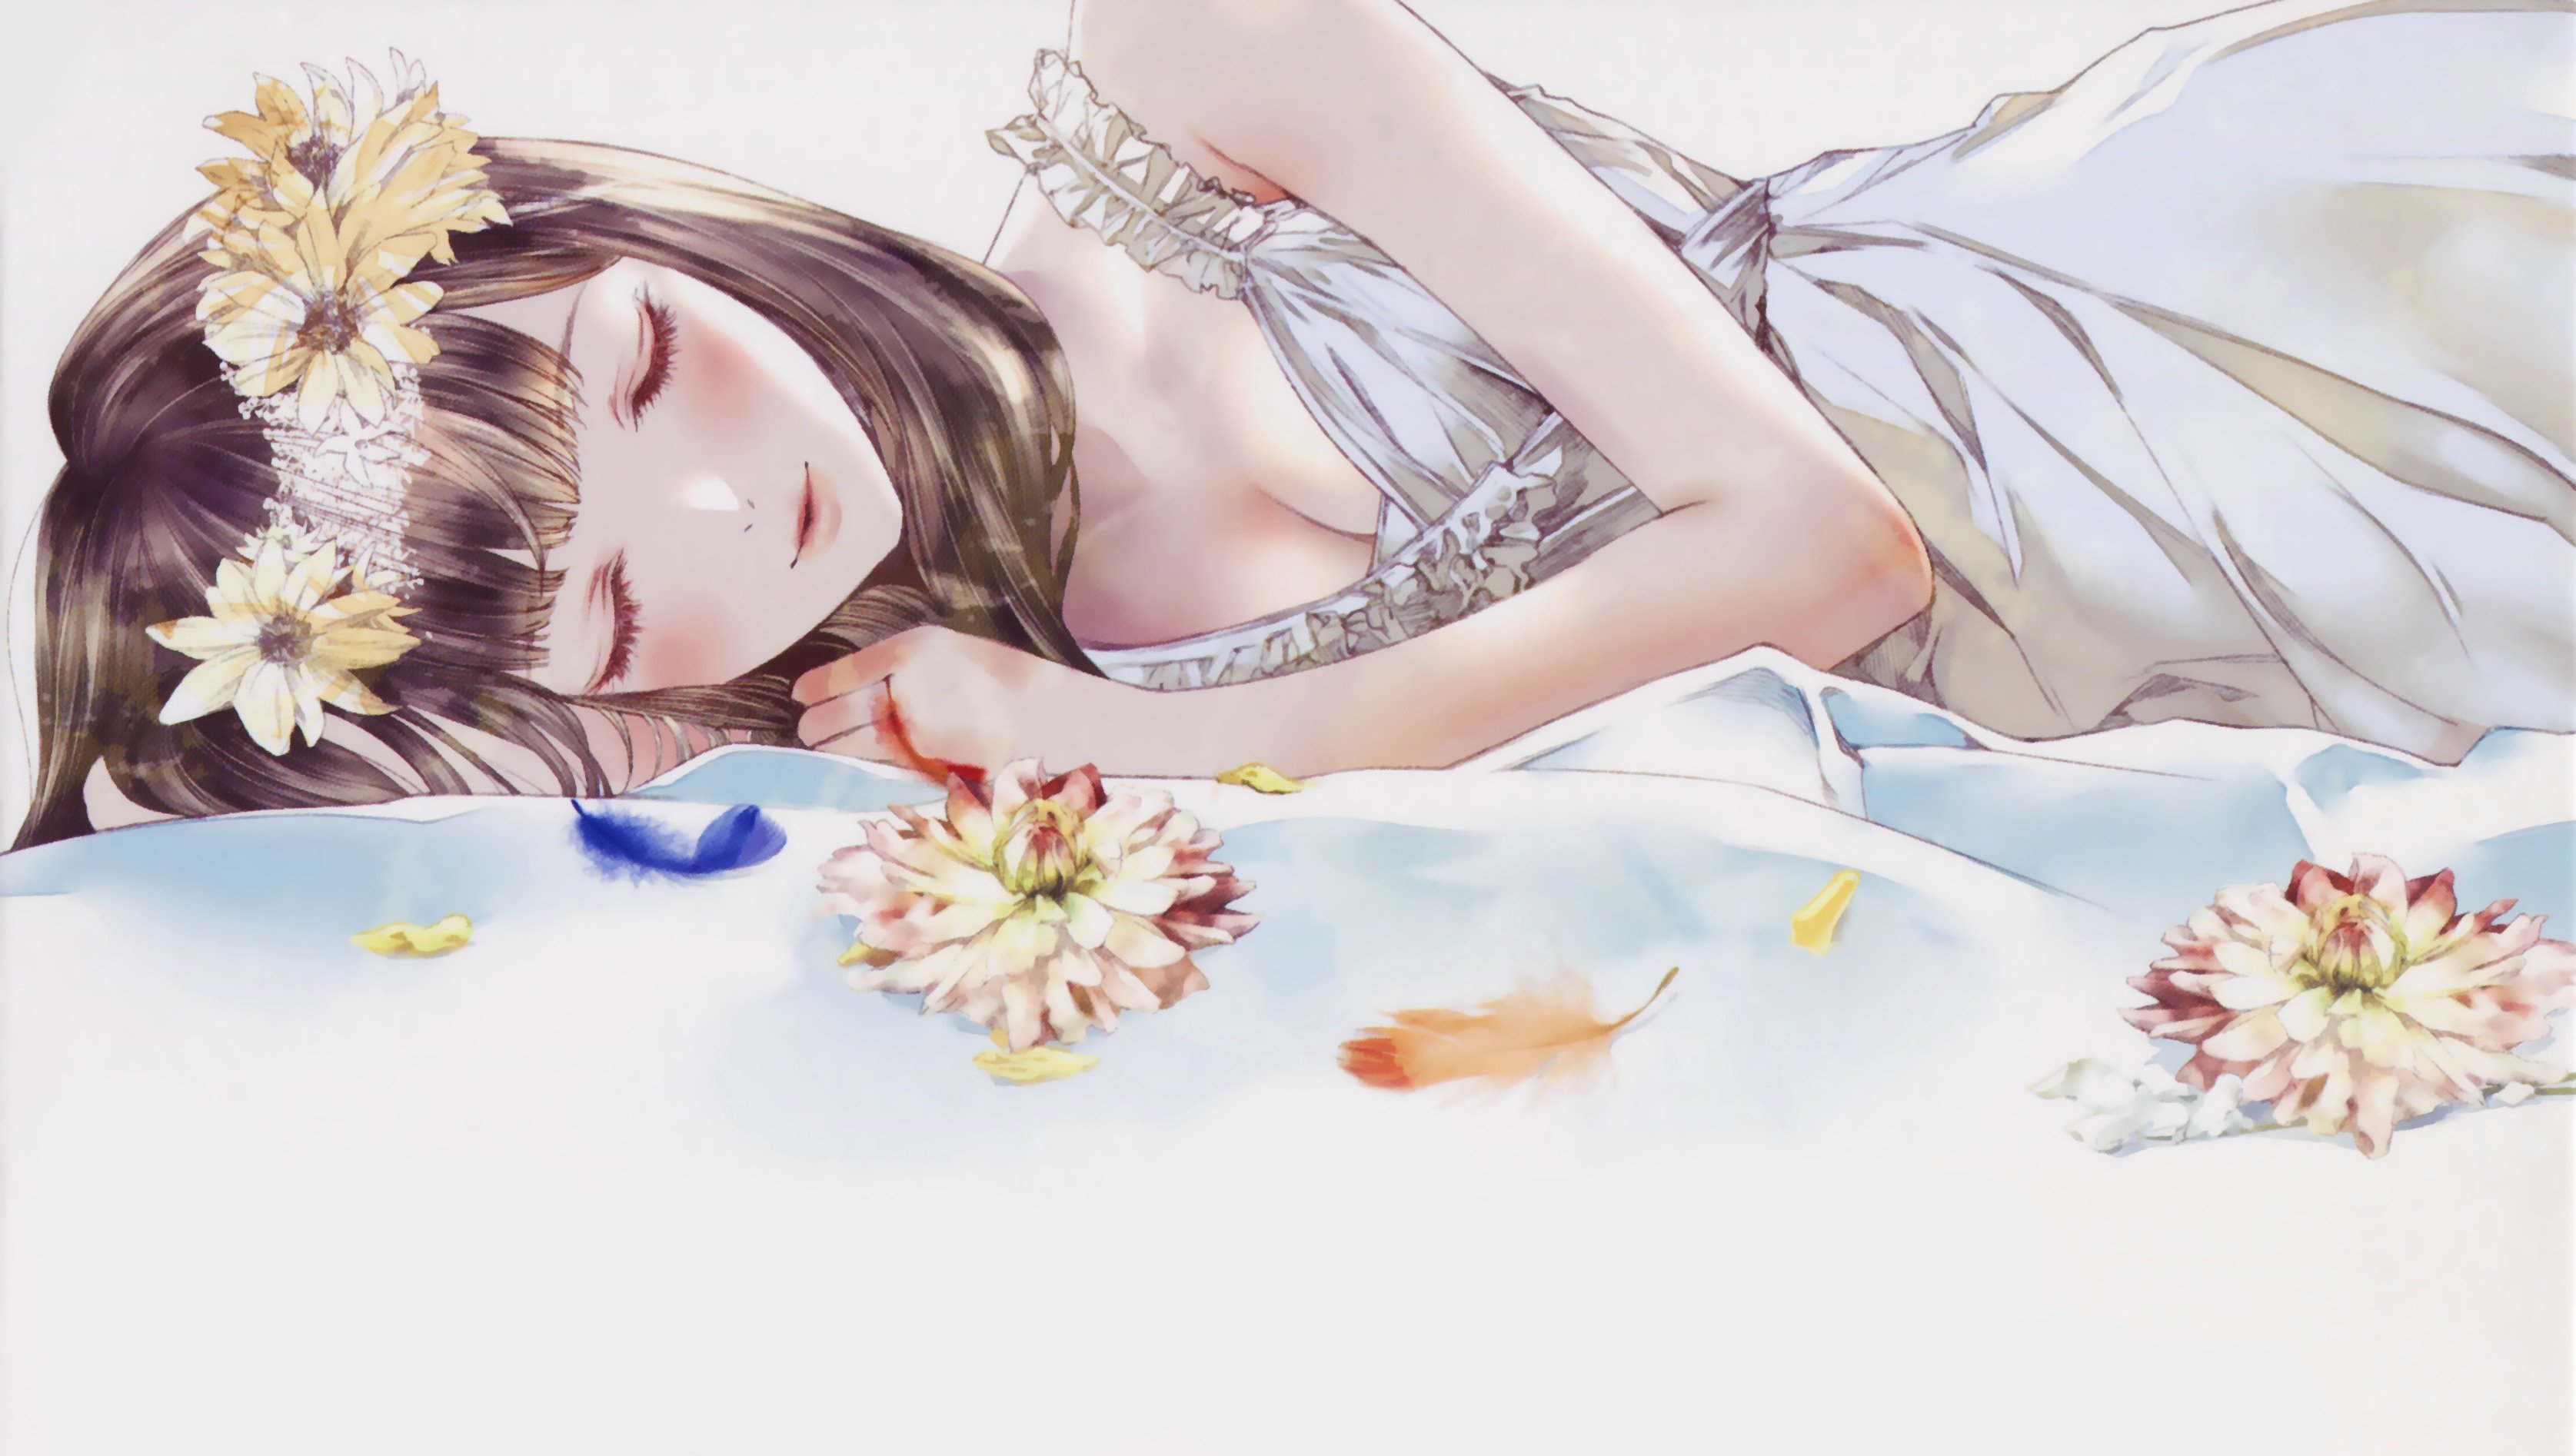 Спящая девушка арт